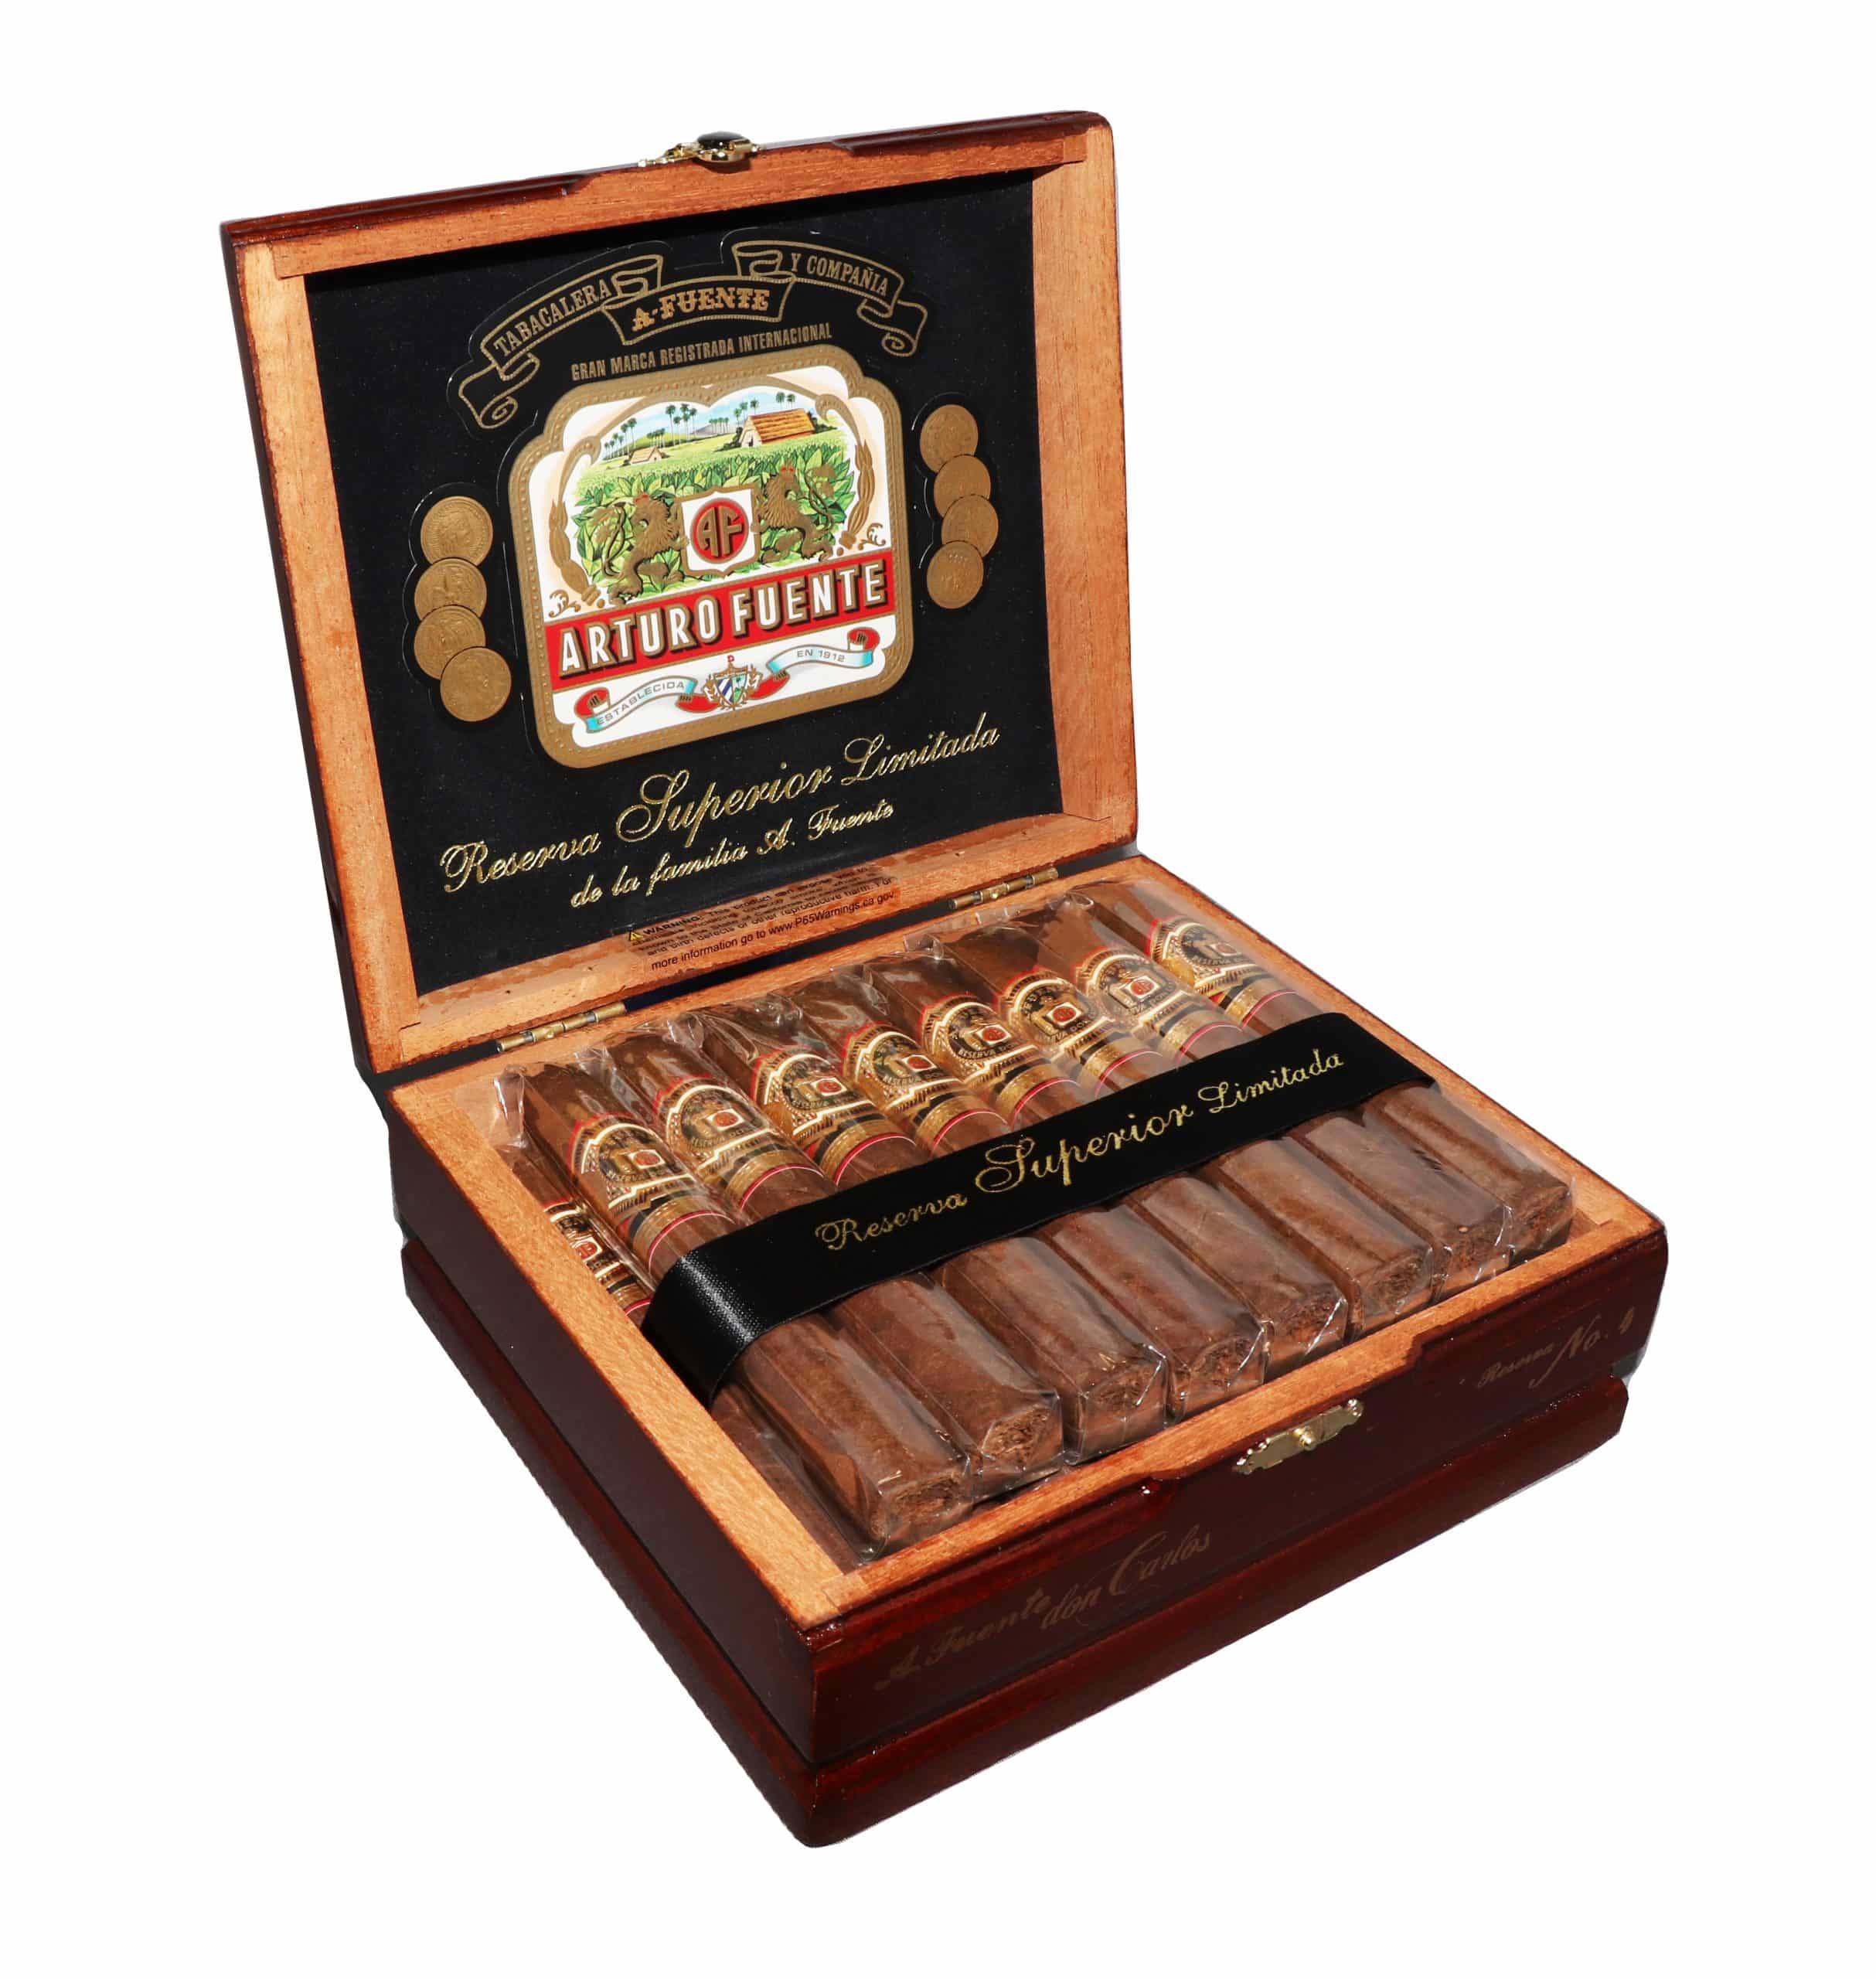 Open box of 25 count Arturo Fuente Don Carlos No. 4 cigars